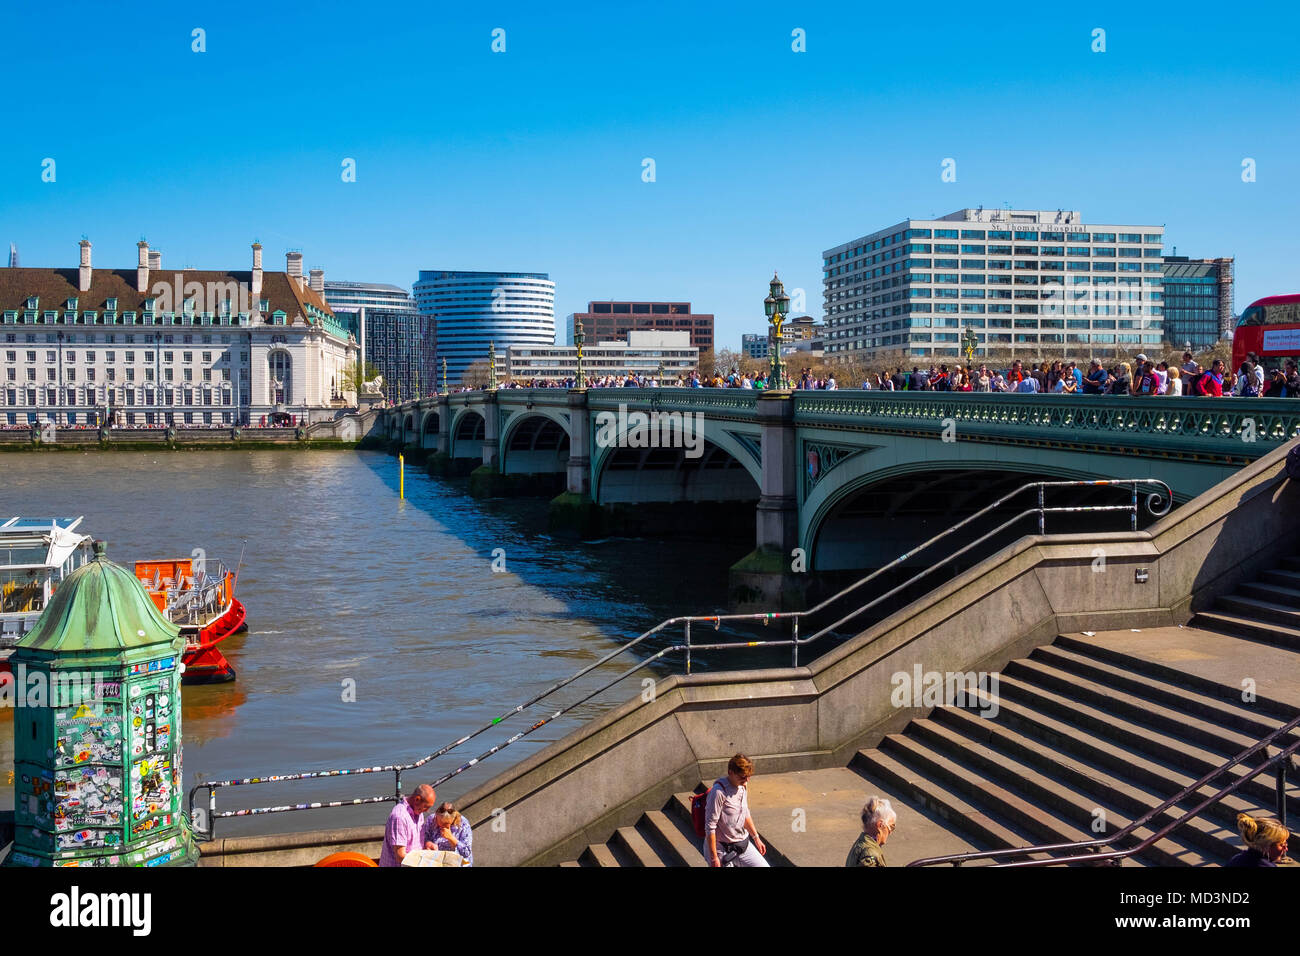 Londra, Regno Unito. Xviii Apr, 2018. Meteo REGNO UNITO: turisti accorrono a Londra in una calda giornata di sole, la folla a piedi sul Westminster Bridge Credito: Tim anello/Alamy Live News Foto Stock